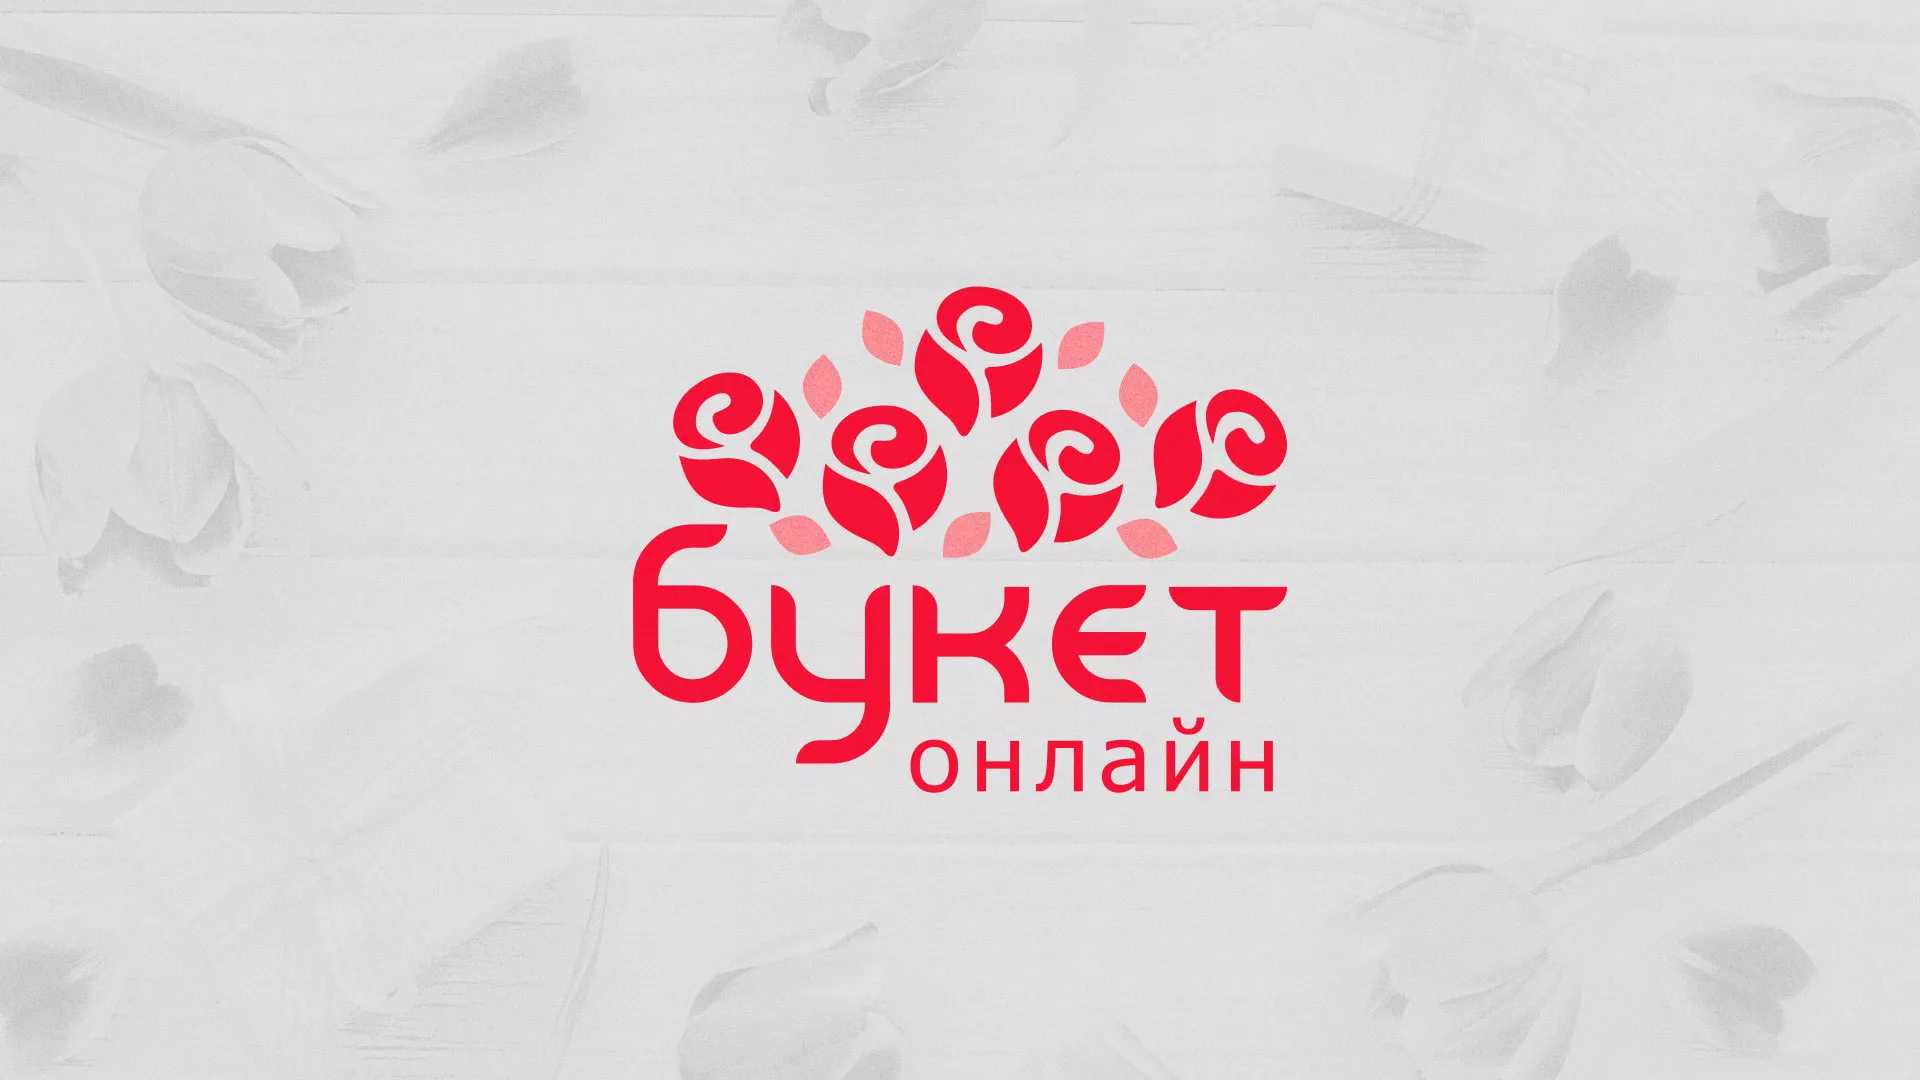 Создание интернет-магазина «Букет-онлайн» по цветам в Белой Калитве